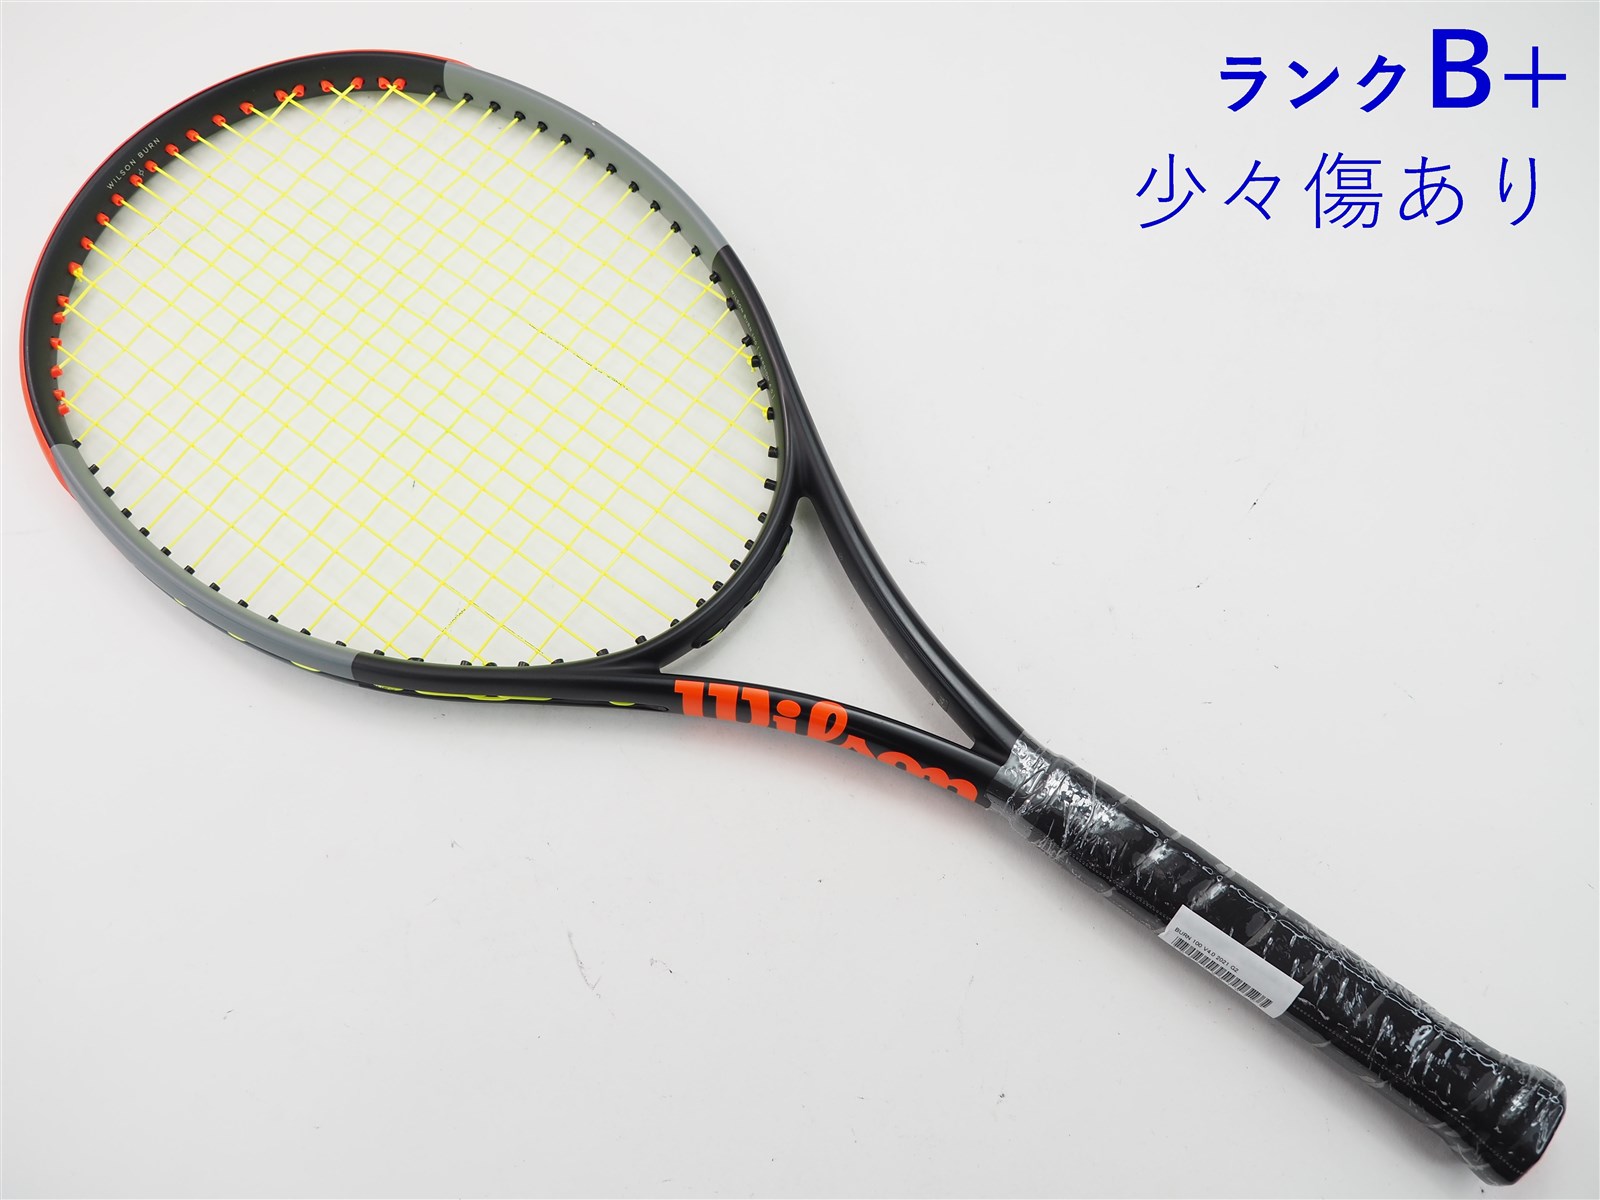 テニスラケット ウィルソン バーン FST 95 2016年モデル (G2)WILSON BURN FST 95 2016